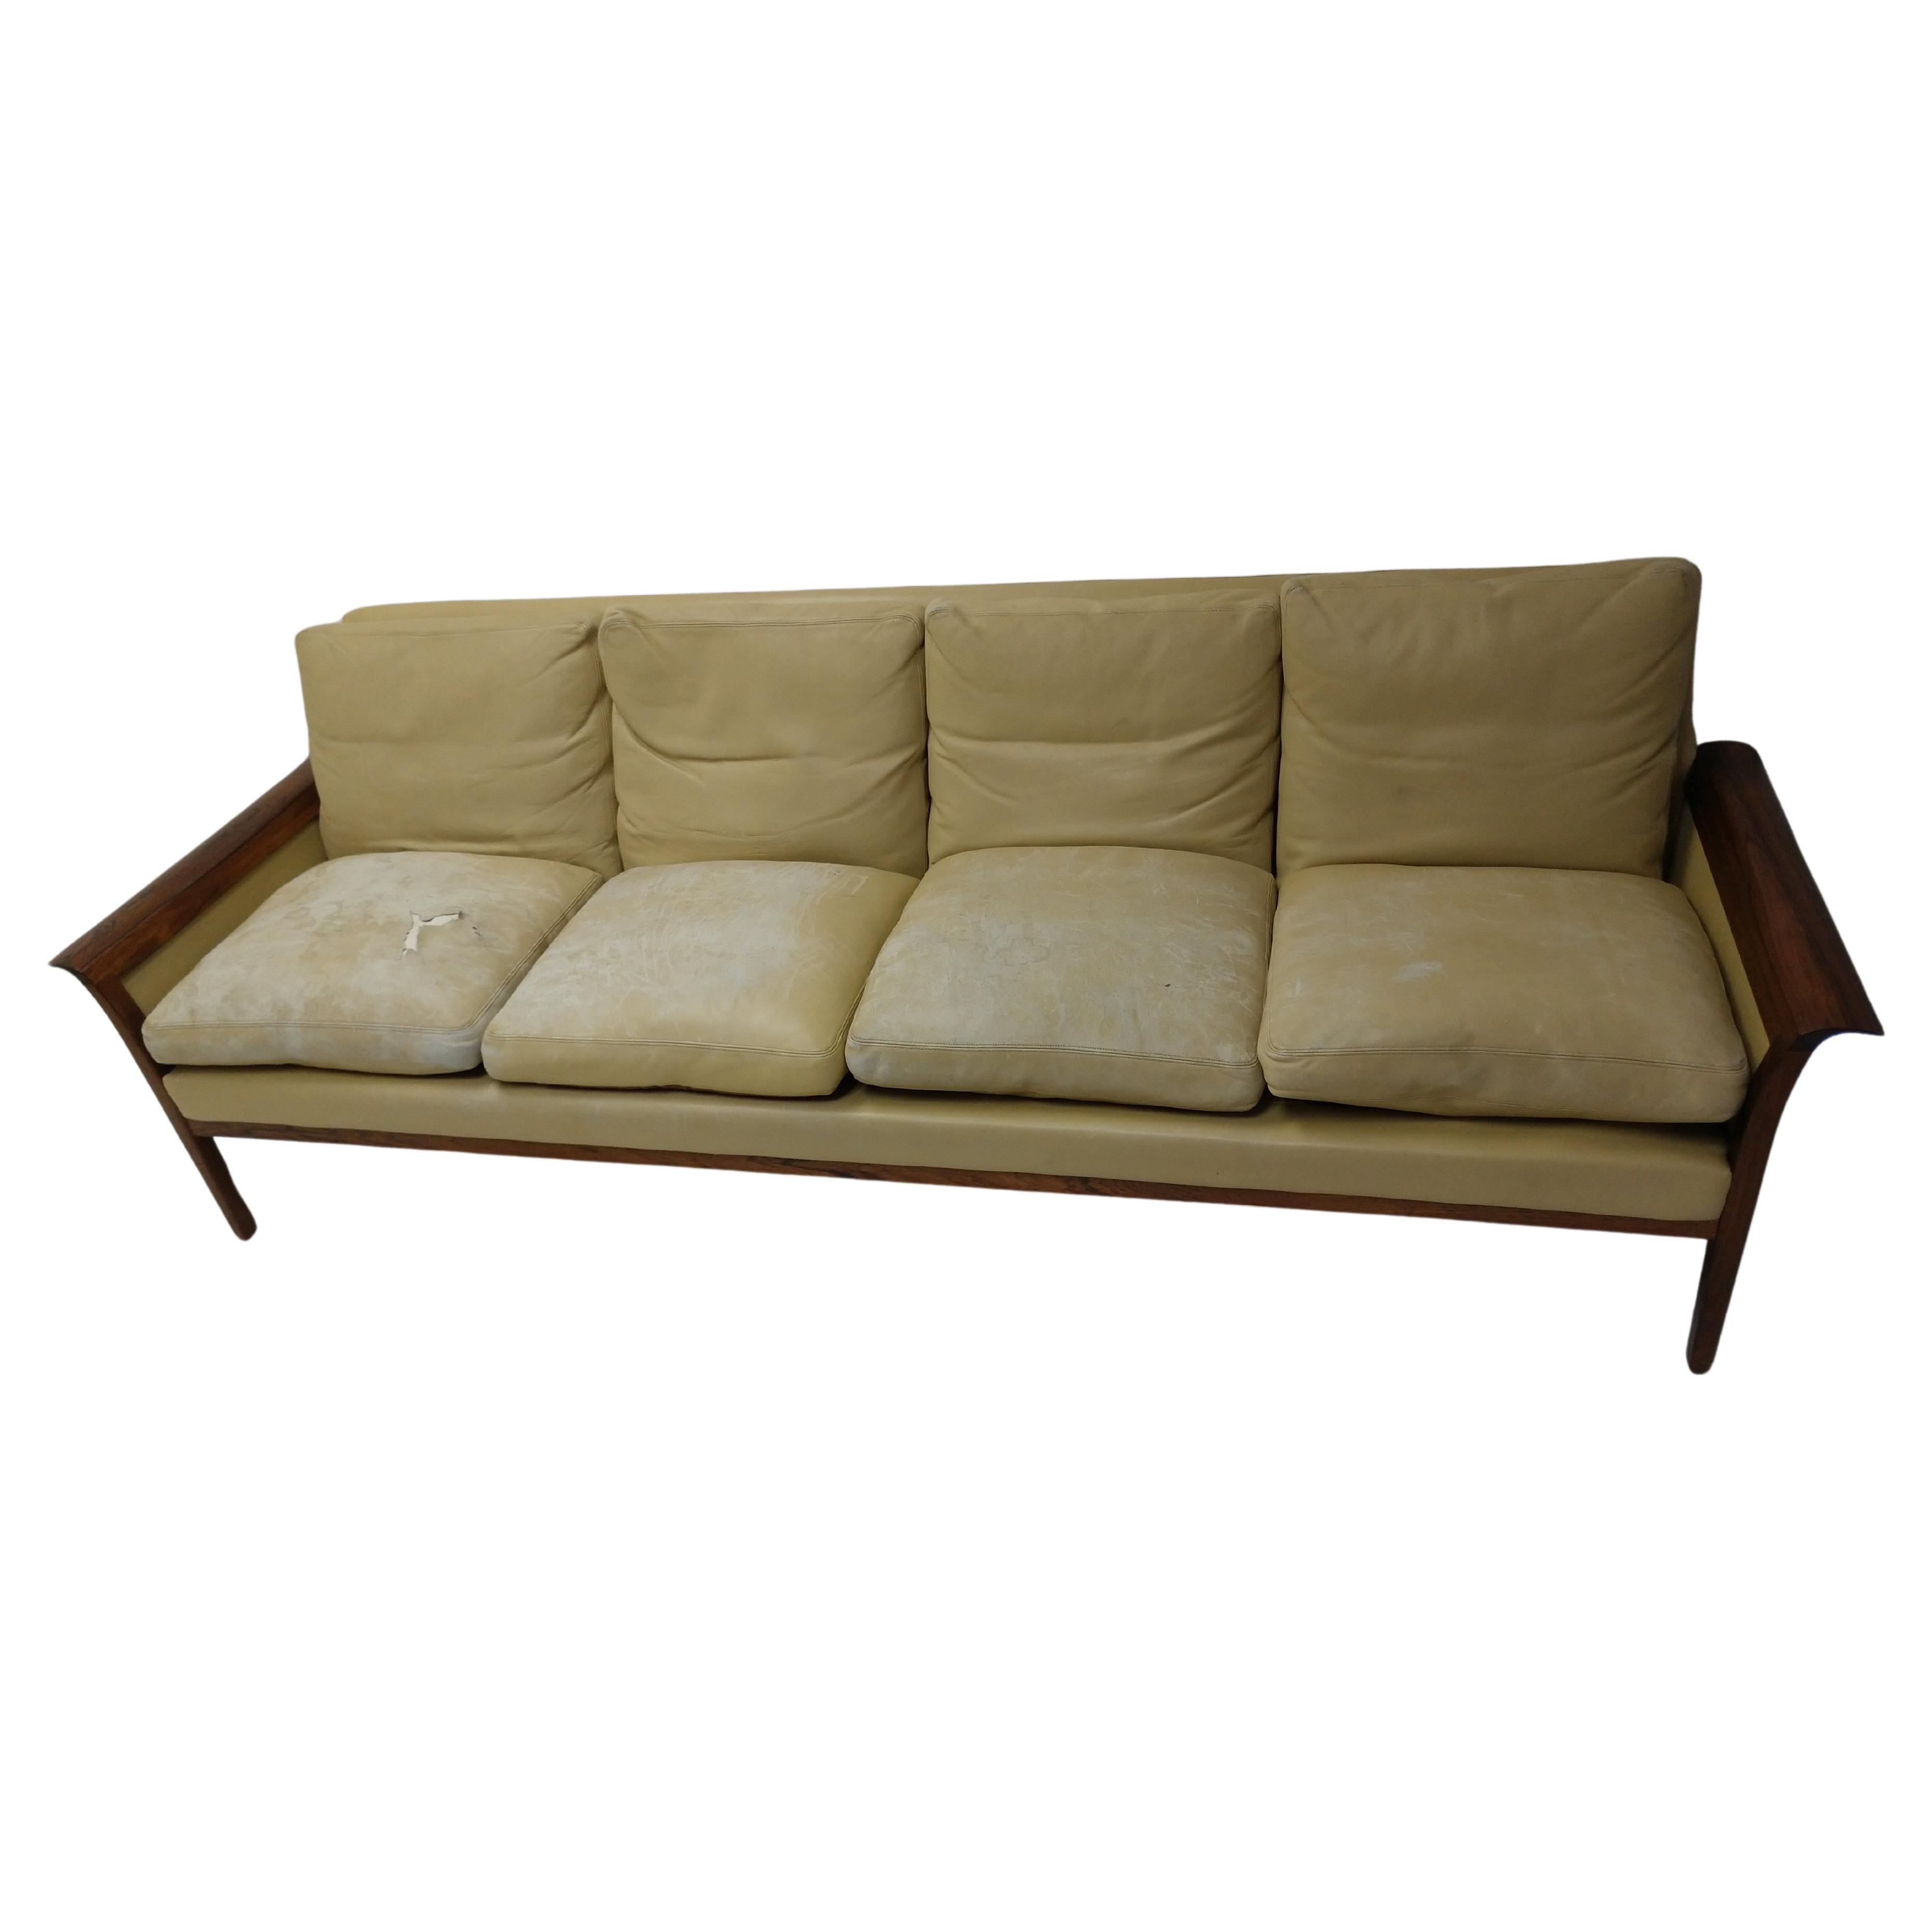 Fabuleux canapé en cuir et bois de rose de Knut Saeter pour Vatne Møbler. Canapé à quatre places, très spacieux et confortable. Le canapé est en très bon état mais les coussins sont très usés. Le palissandre a un grain magnifique et est en très bon